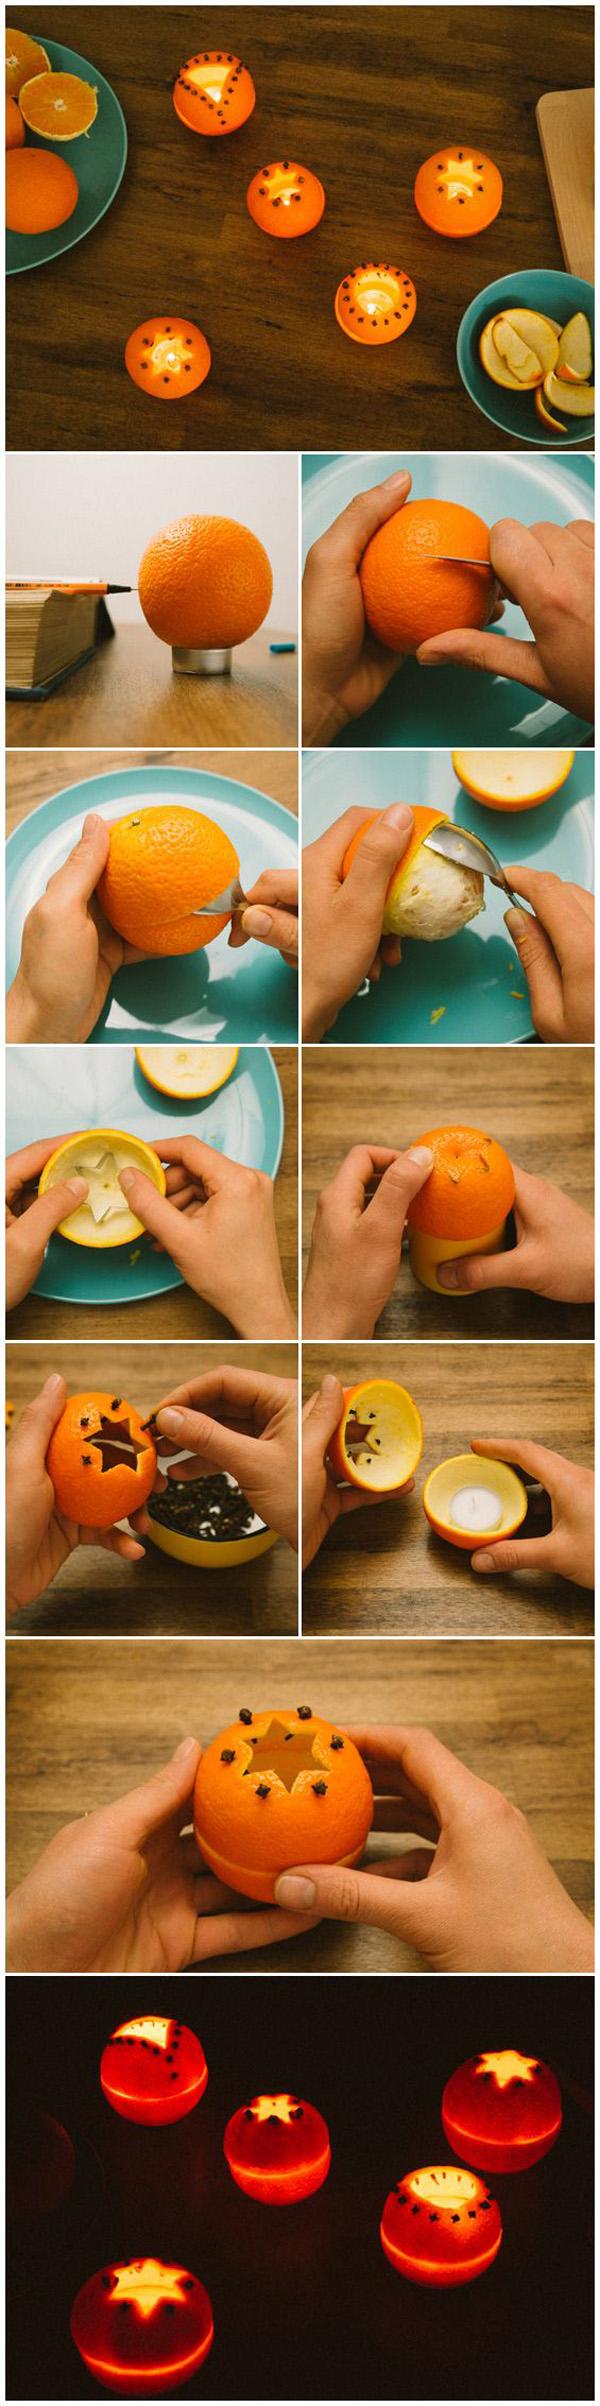 حاملات الشموع DIY المصنوعة من البرتقال